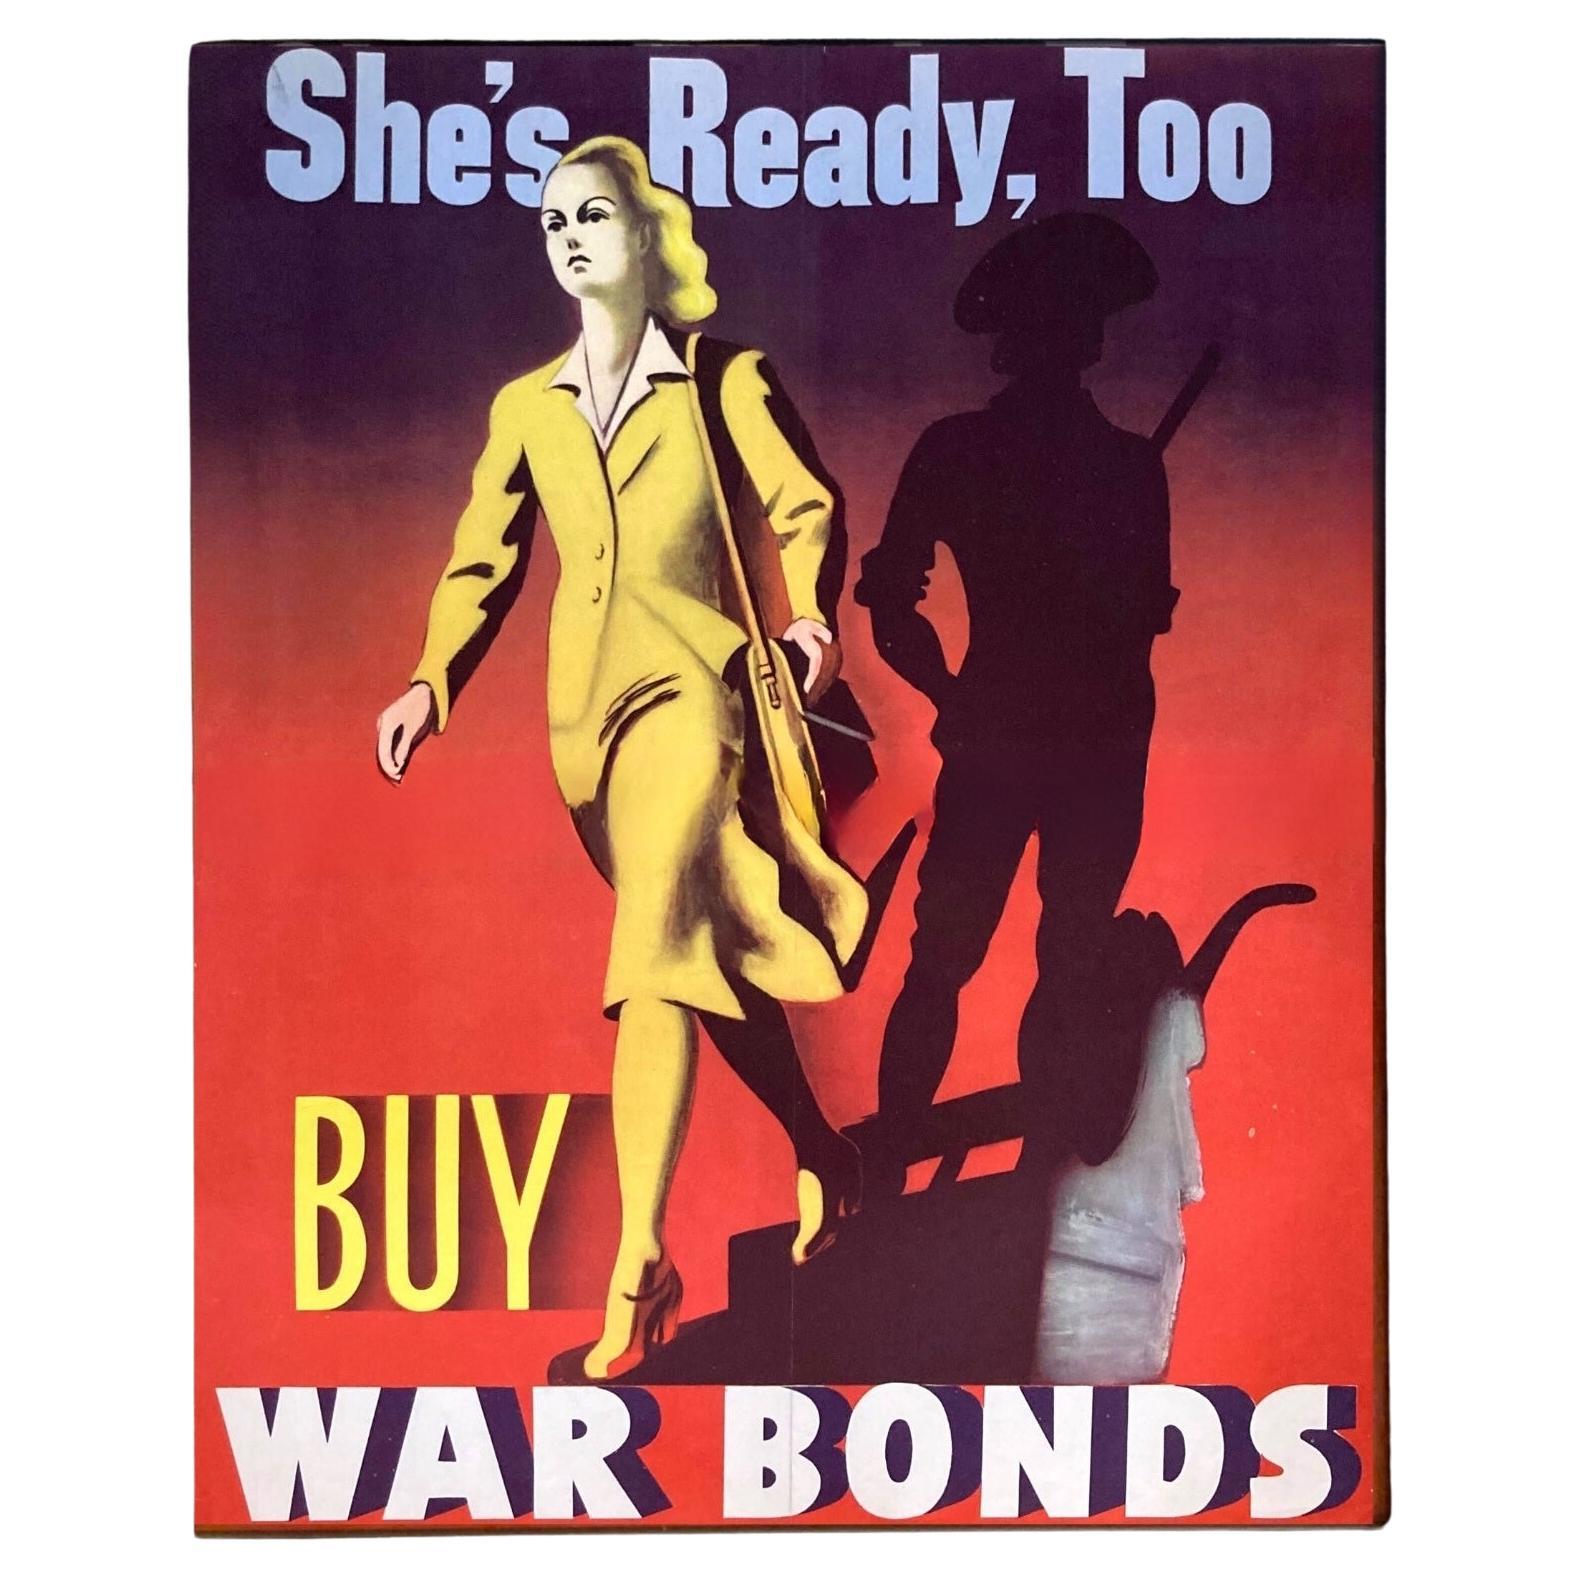 Voici une affiche vintage des Bons de guerre de la Seconde Guerre mondiale, imprimée en 1942. Sur l'affiche, une femme sûre d'elle part avec conviction acheter des obligations de guerre, la main sur son portefeuille. En marchant, la femme laisse